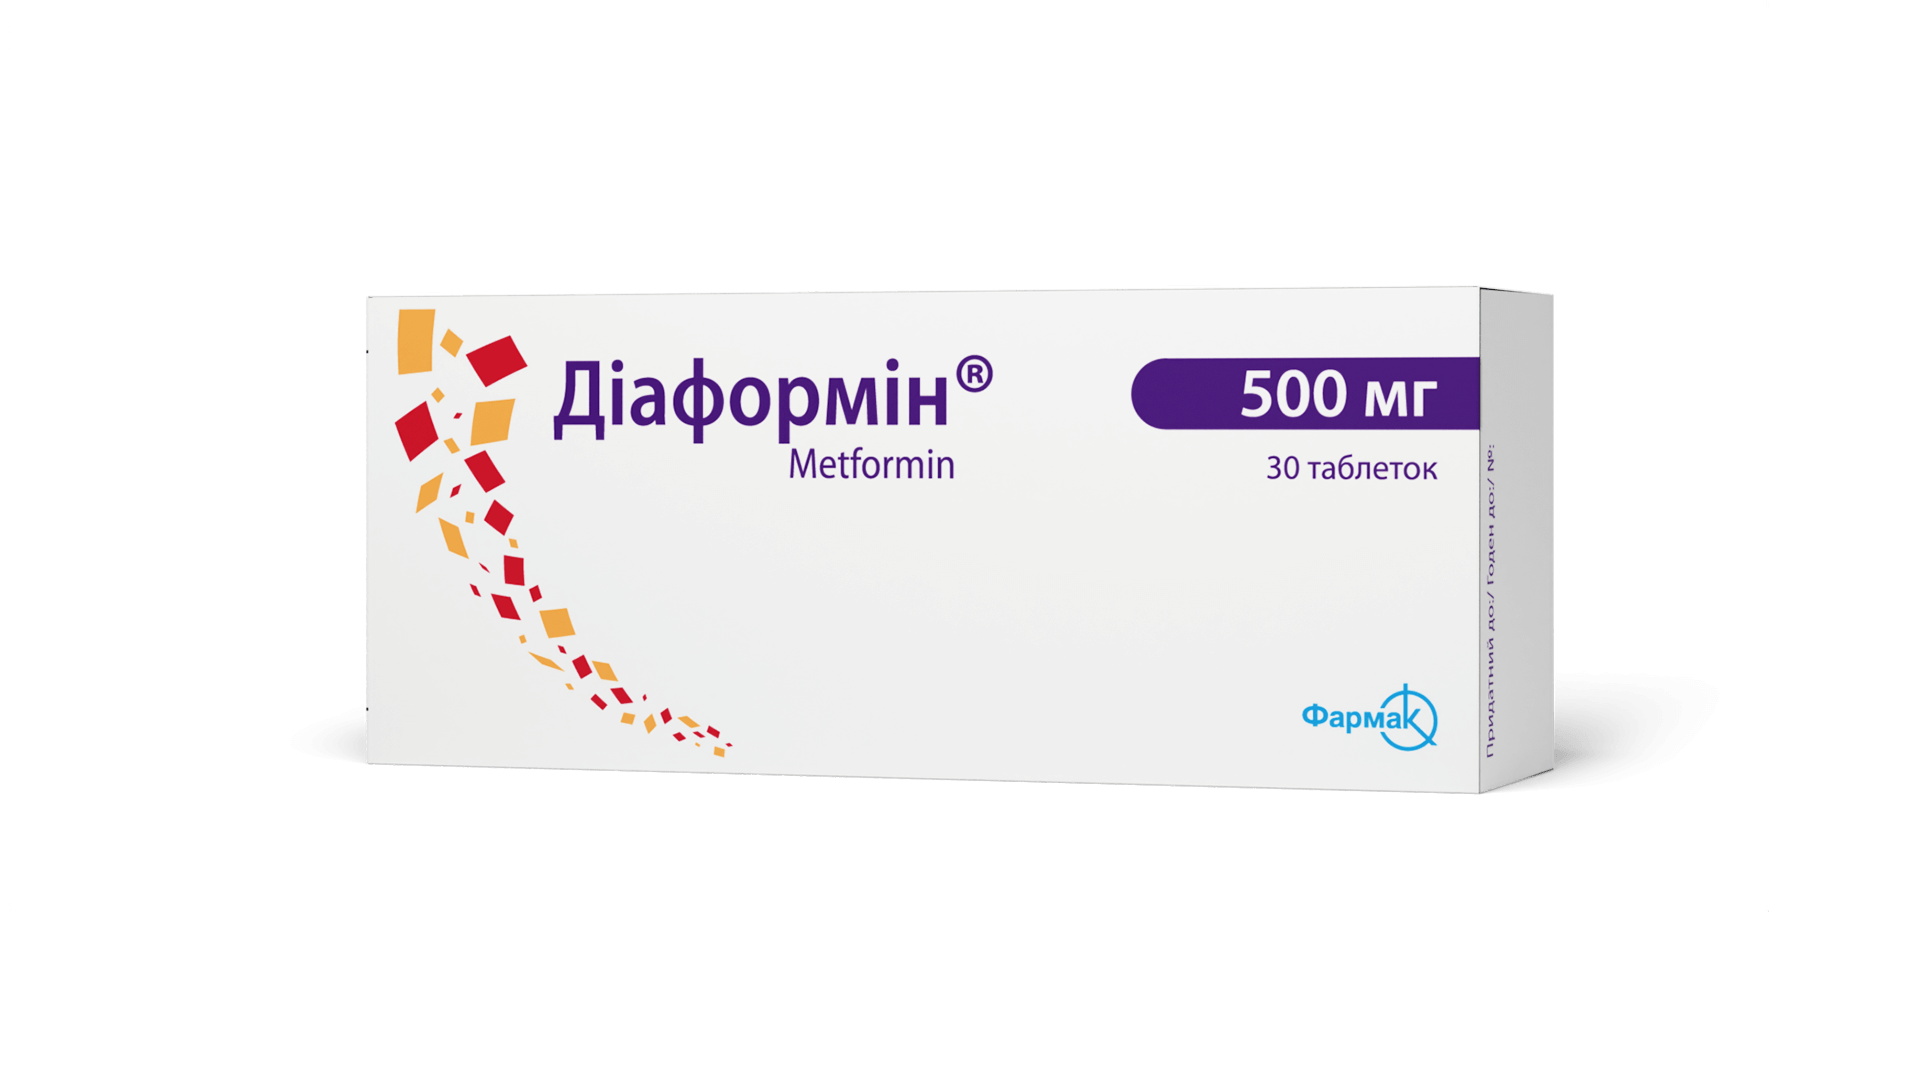 Диаформин® 500 мг (3)